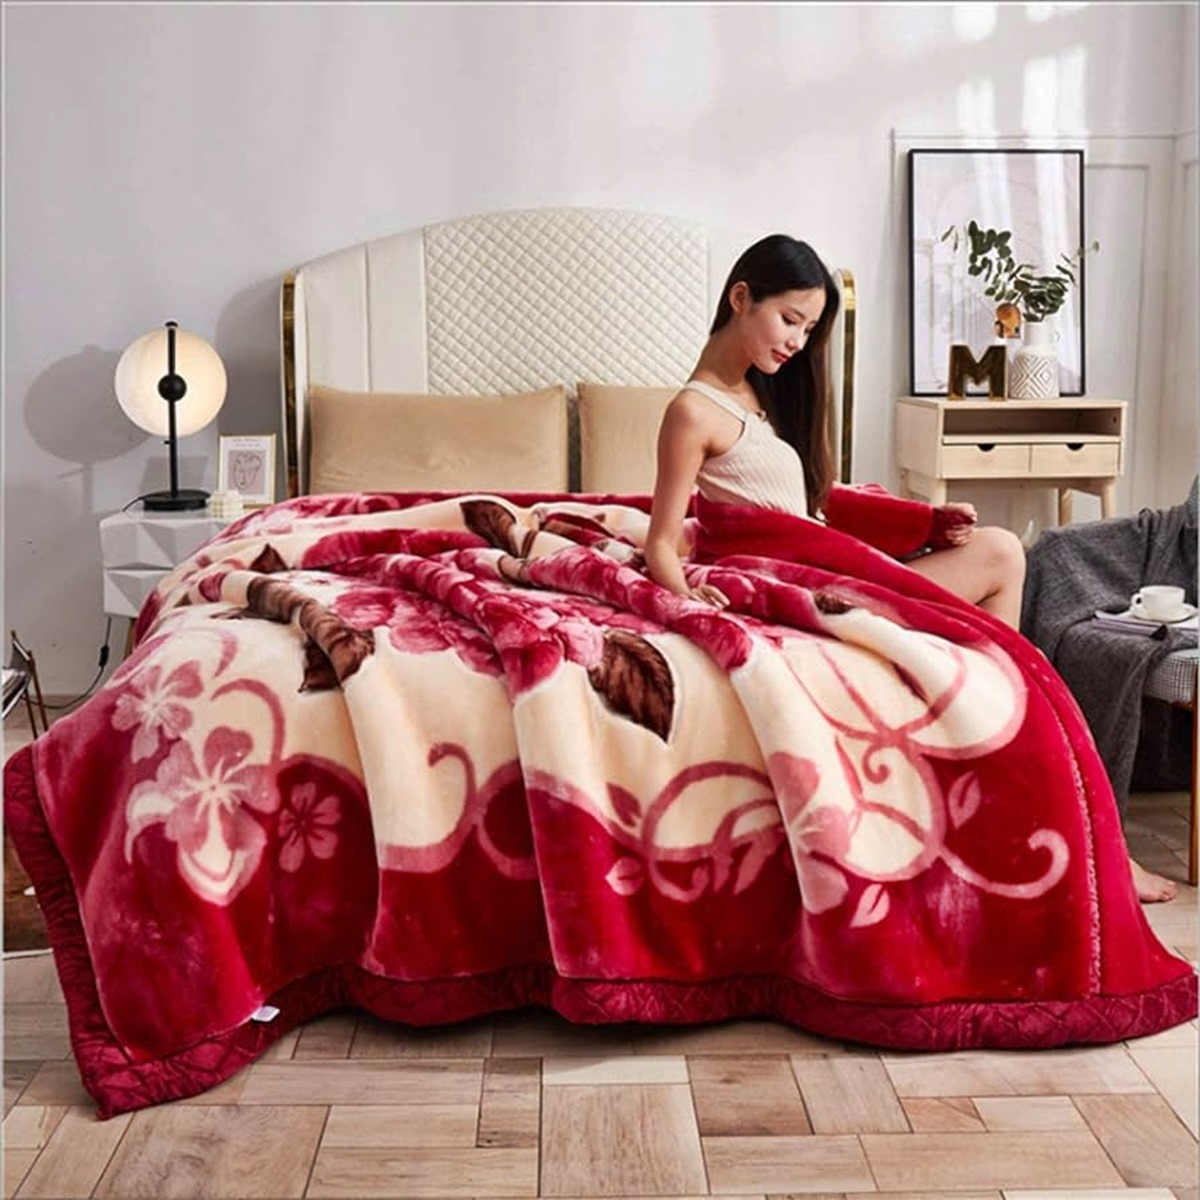 Utopia Bedding Sherpa Bed Blanket Queen Size Grey 480GSM Plush Blanket  Fleece Re